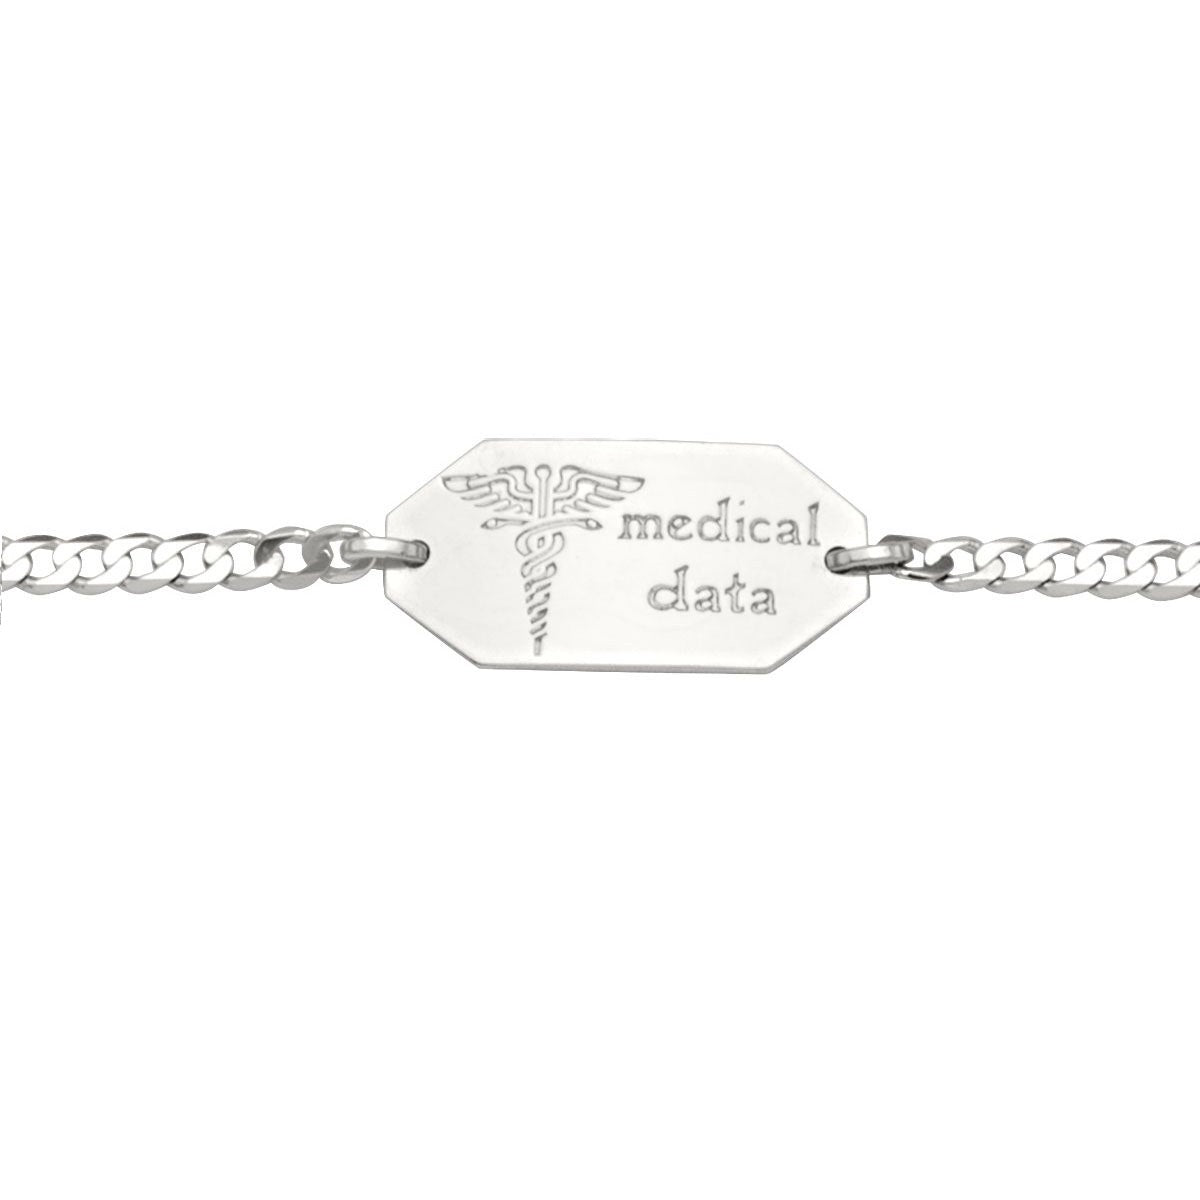 BM0103, Gold Bracelet, Medical ID, White Gold, Engravable